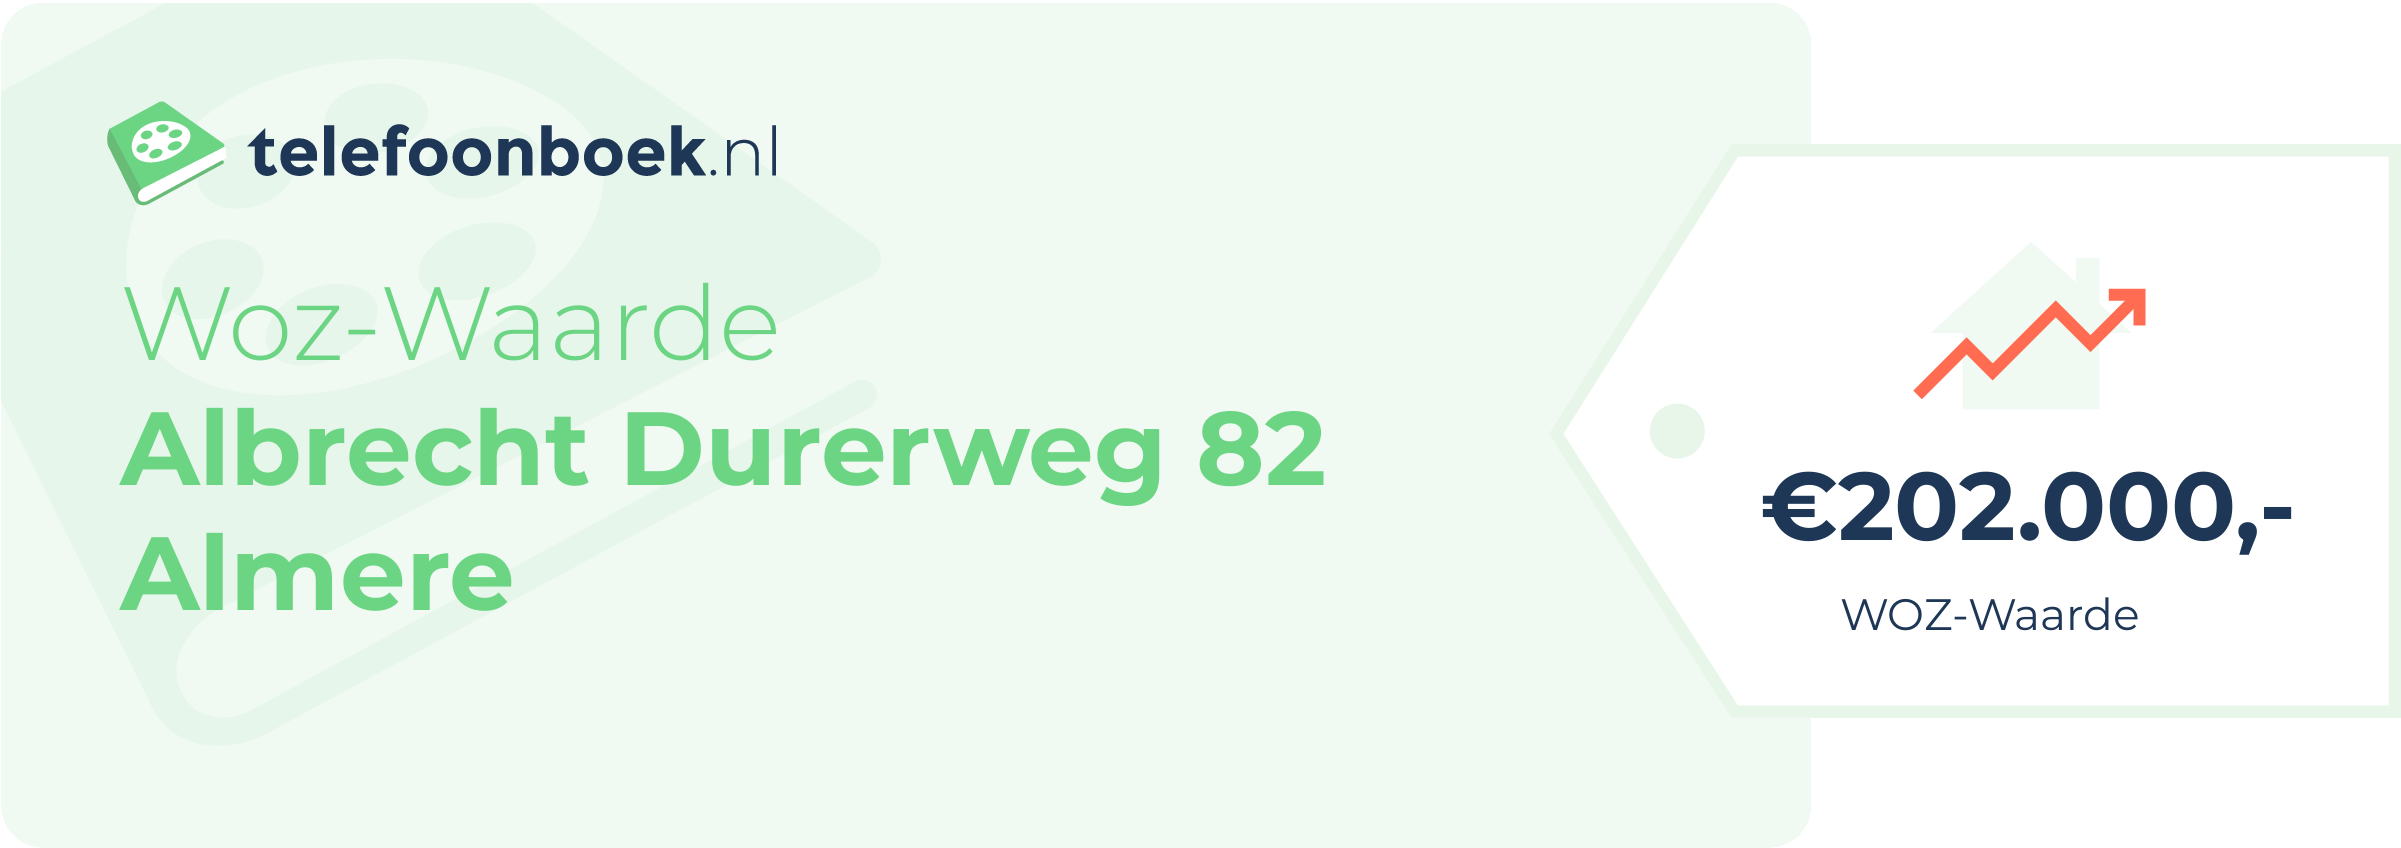 WOZ-waarde Albrecht Durerweg 82 Almere